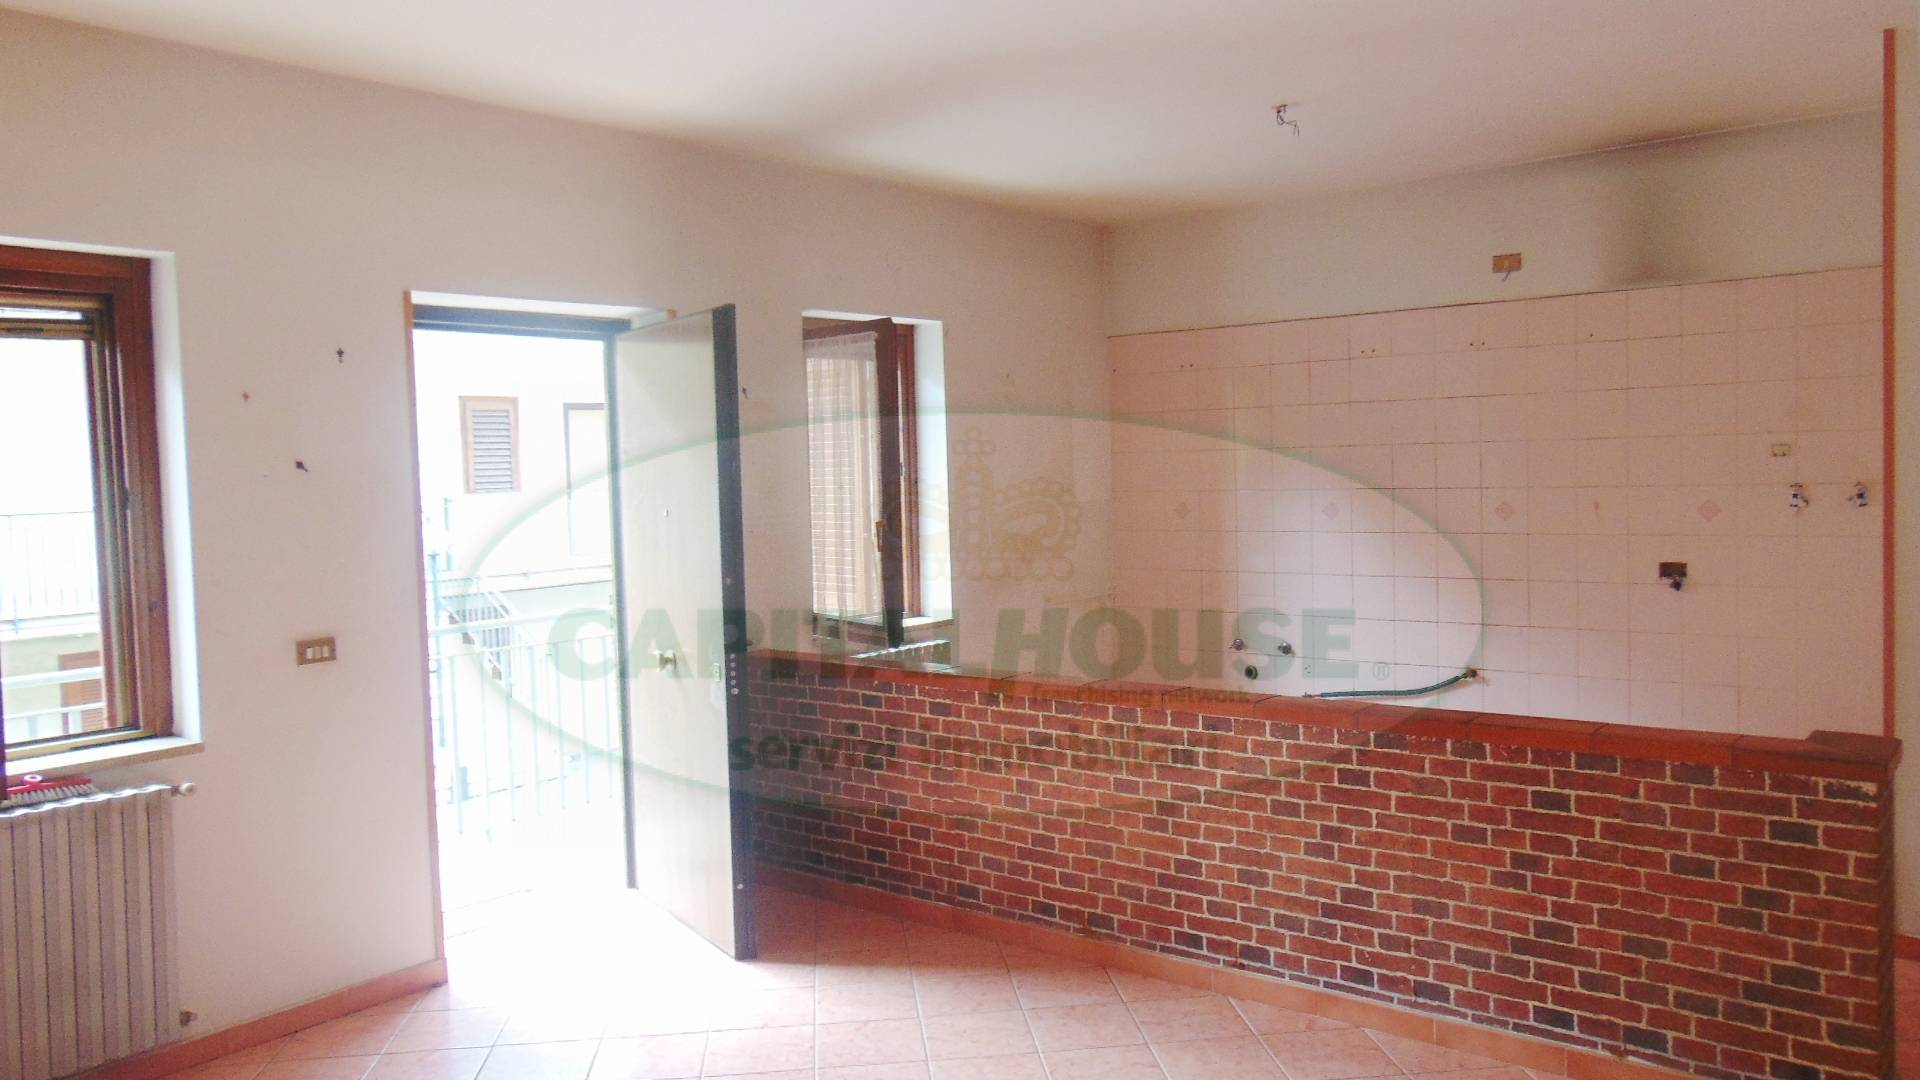 Appartamento in vendita a Sirignano, 3 locali, prezzo € 89.000 | CambioCasa.it